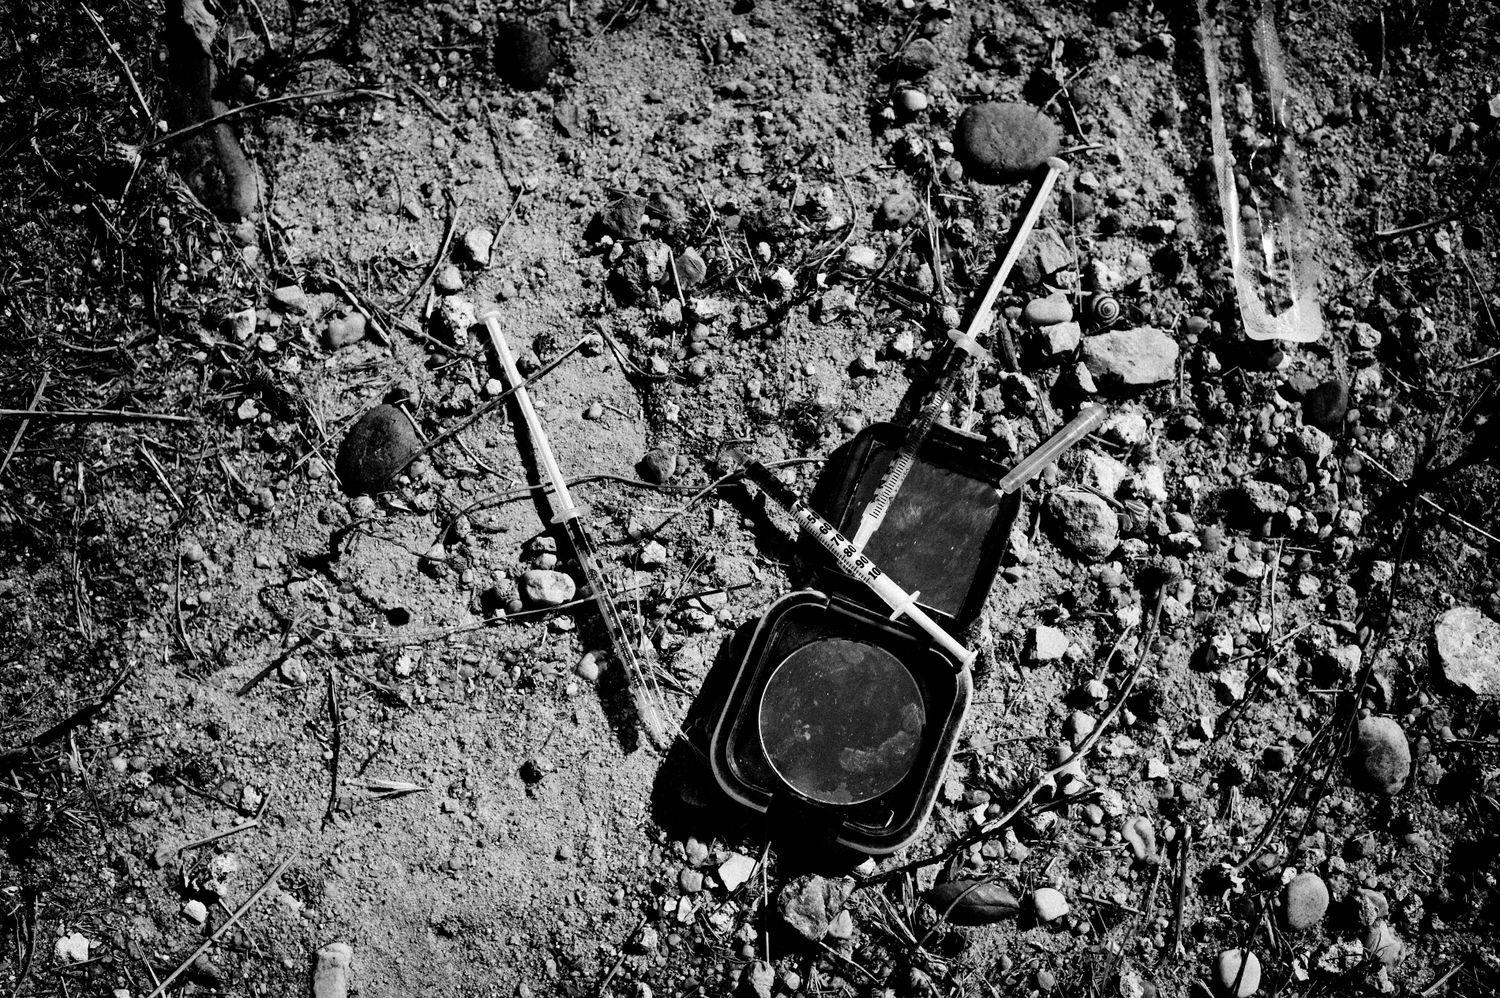 Schwarzweiss Fotografie zeigt gebrauchte Spritzen am Boden.